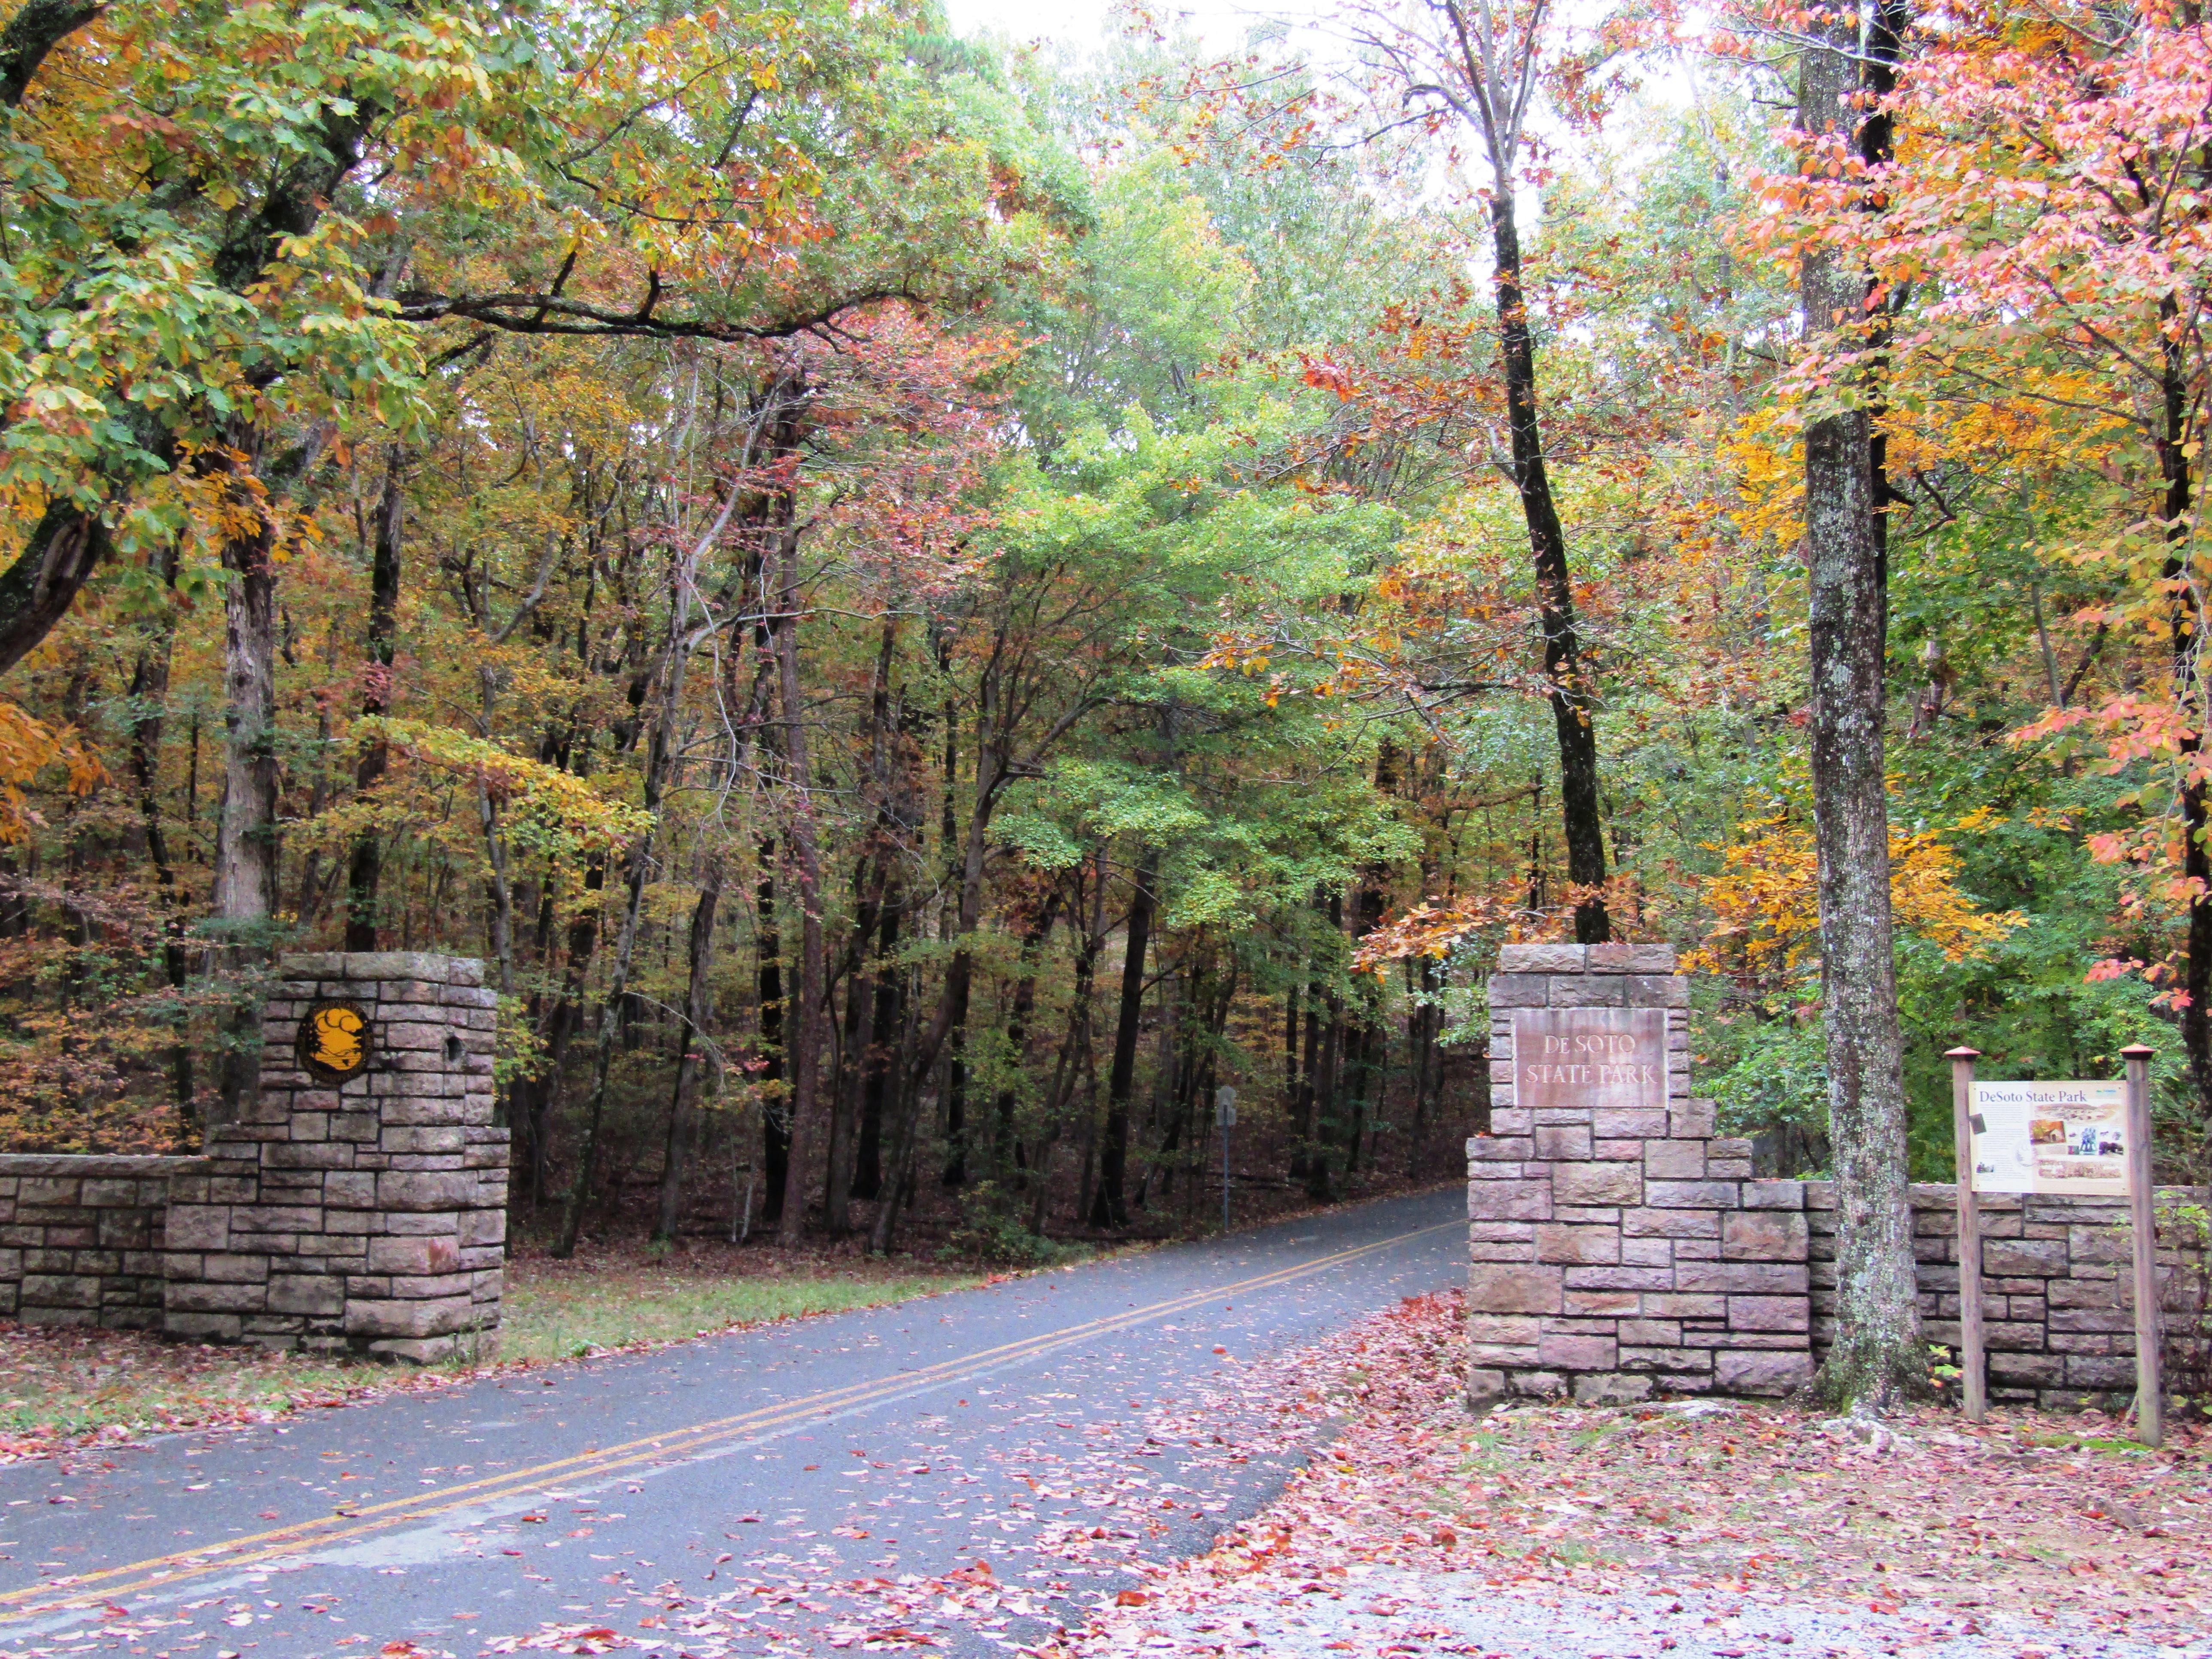 DeSoto State Park Original Entrance to the Park- Fall Color